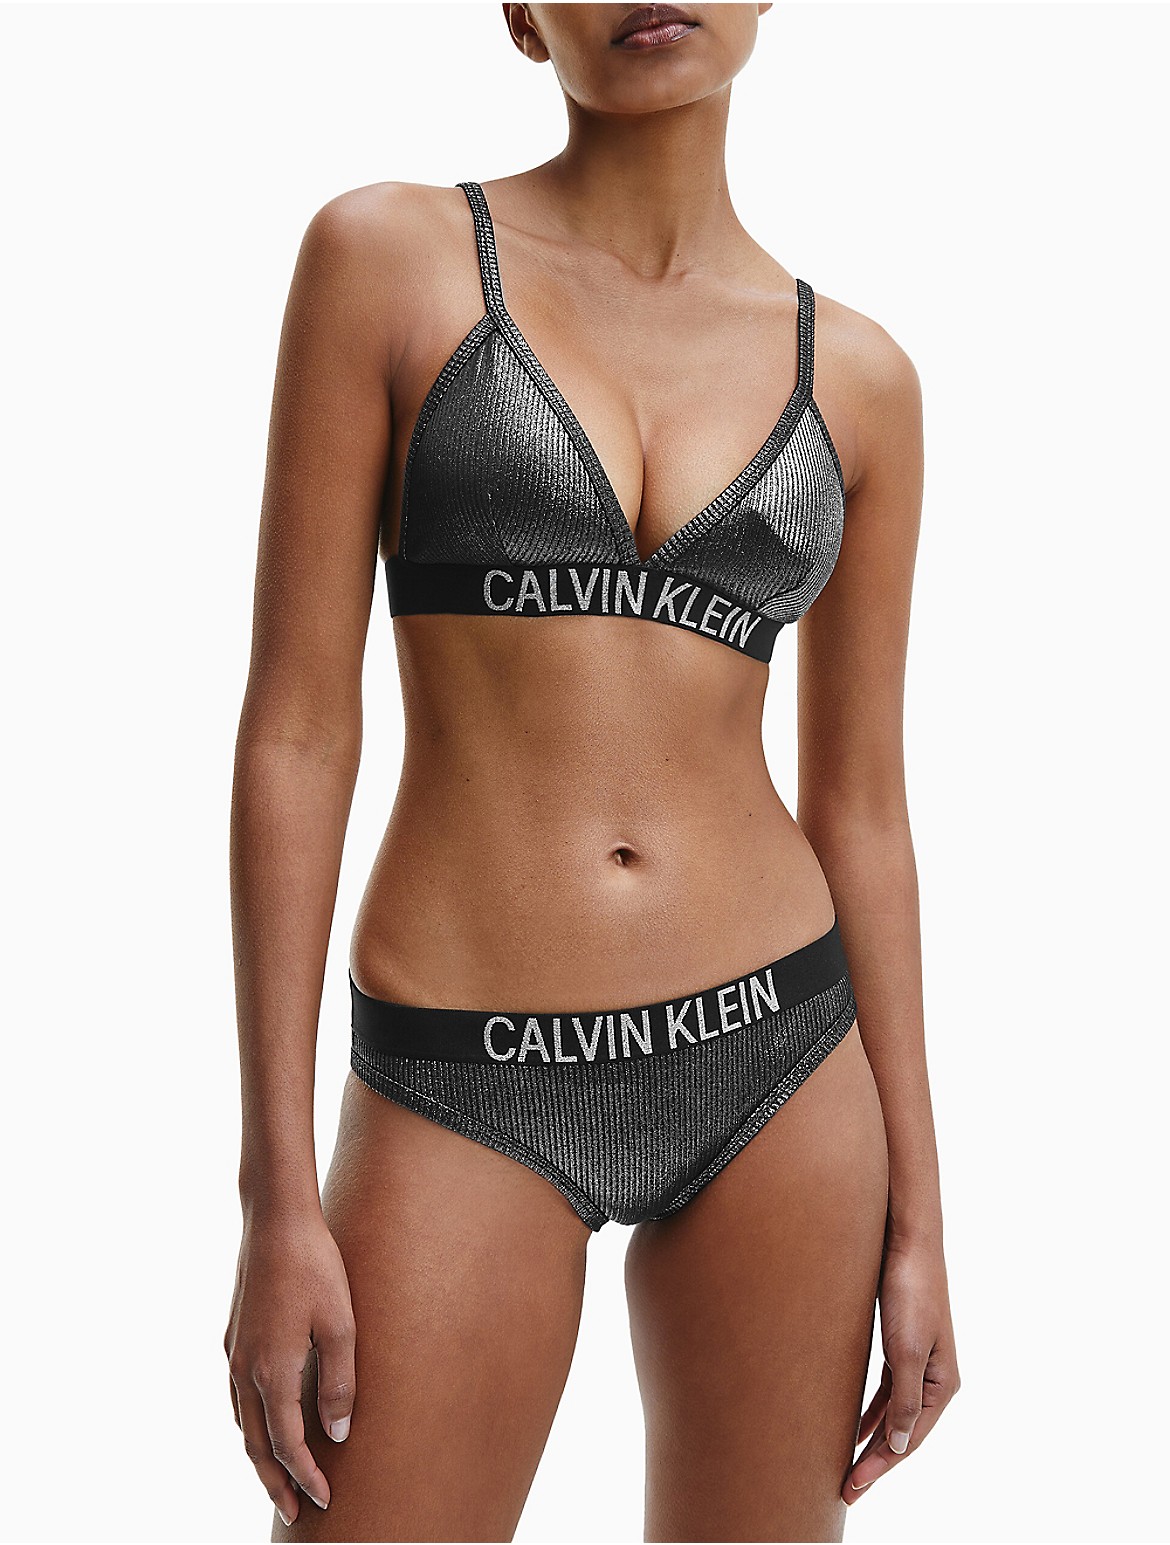 Calvin Klein Women's Core Solids Triangle Bikini Top - Black - S